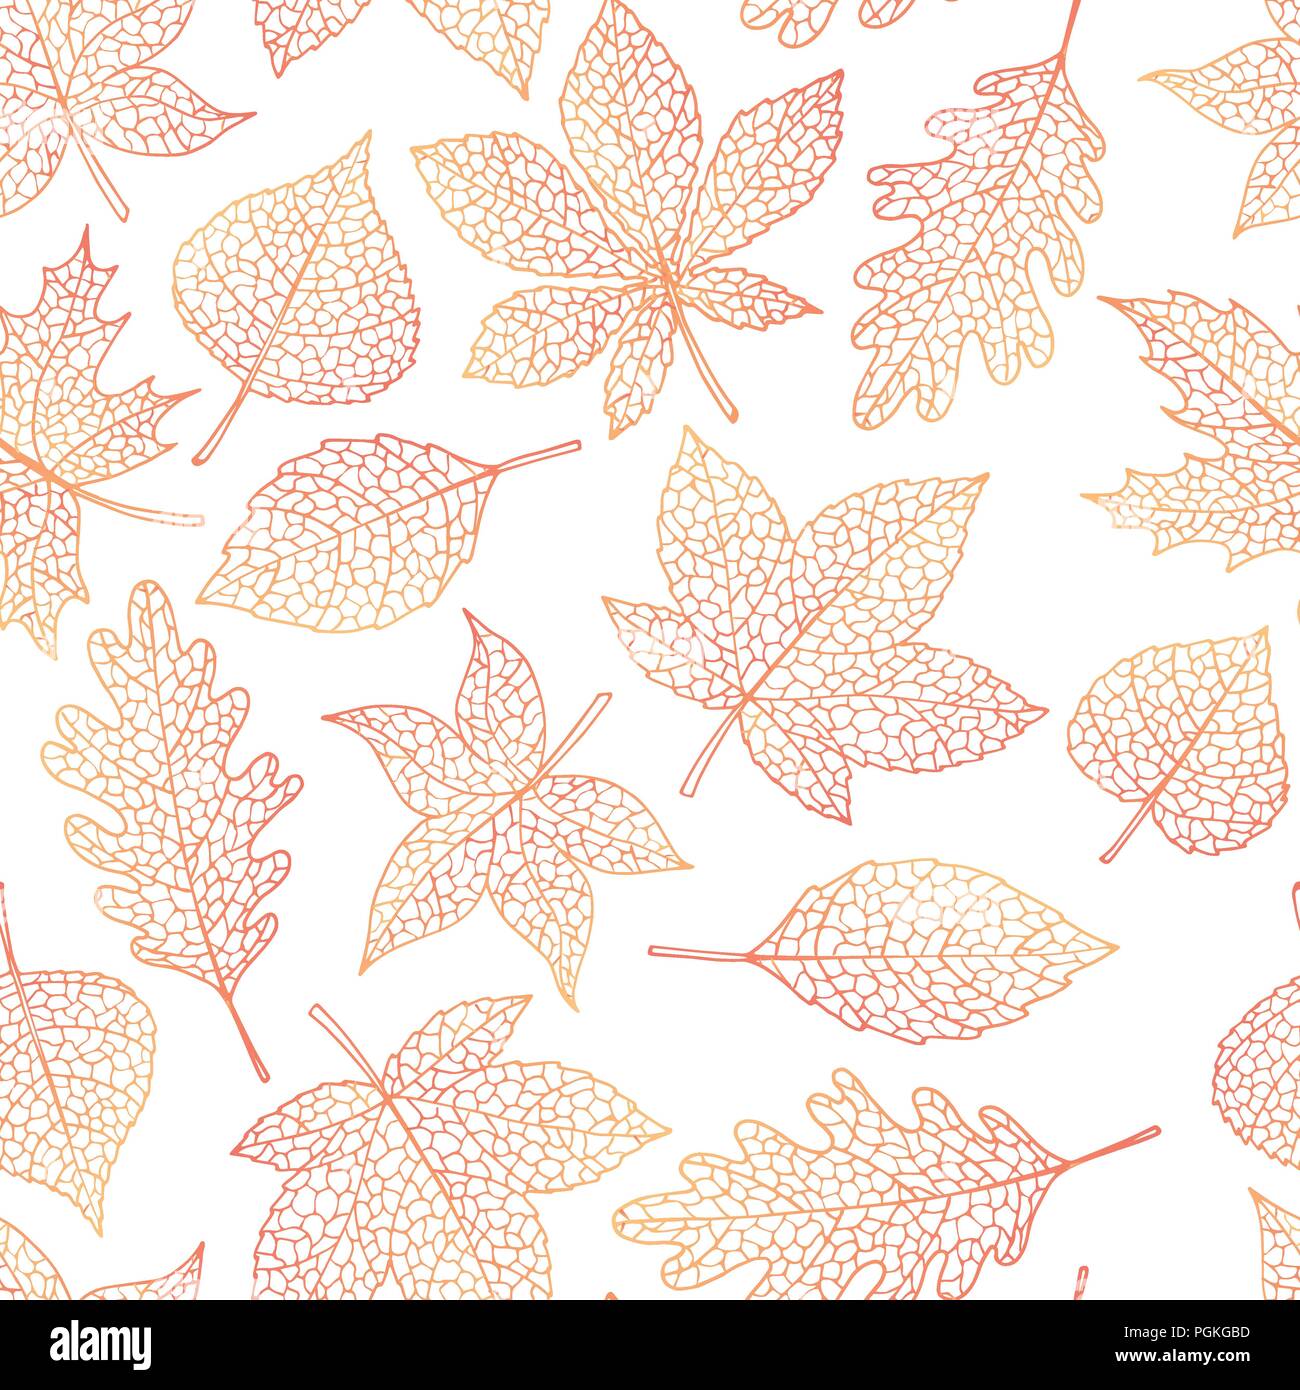 Modèle sans couture automne vecteur avec le chêne, peuplier, hêtre, érable, peuplier et feuilles marron d'exposer sur le fond blanc. Ligne de chute art de folia Illustration de Vecteur